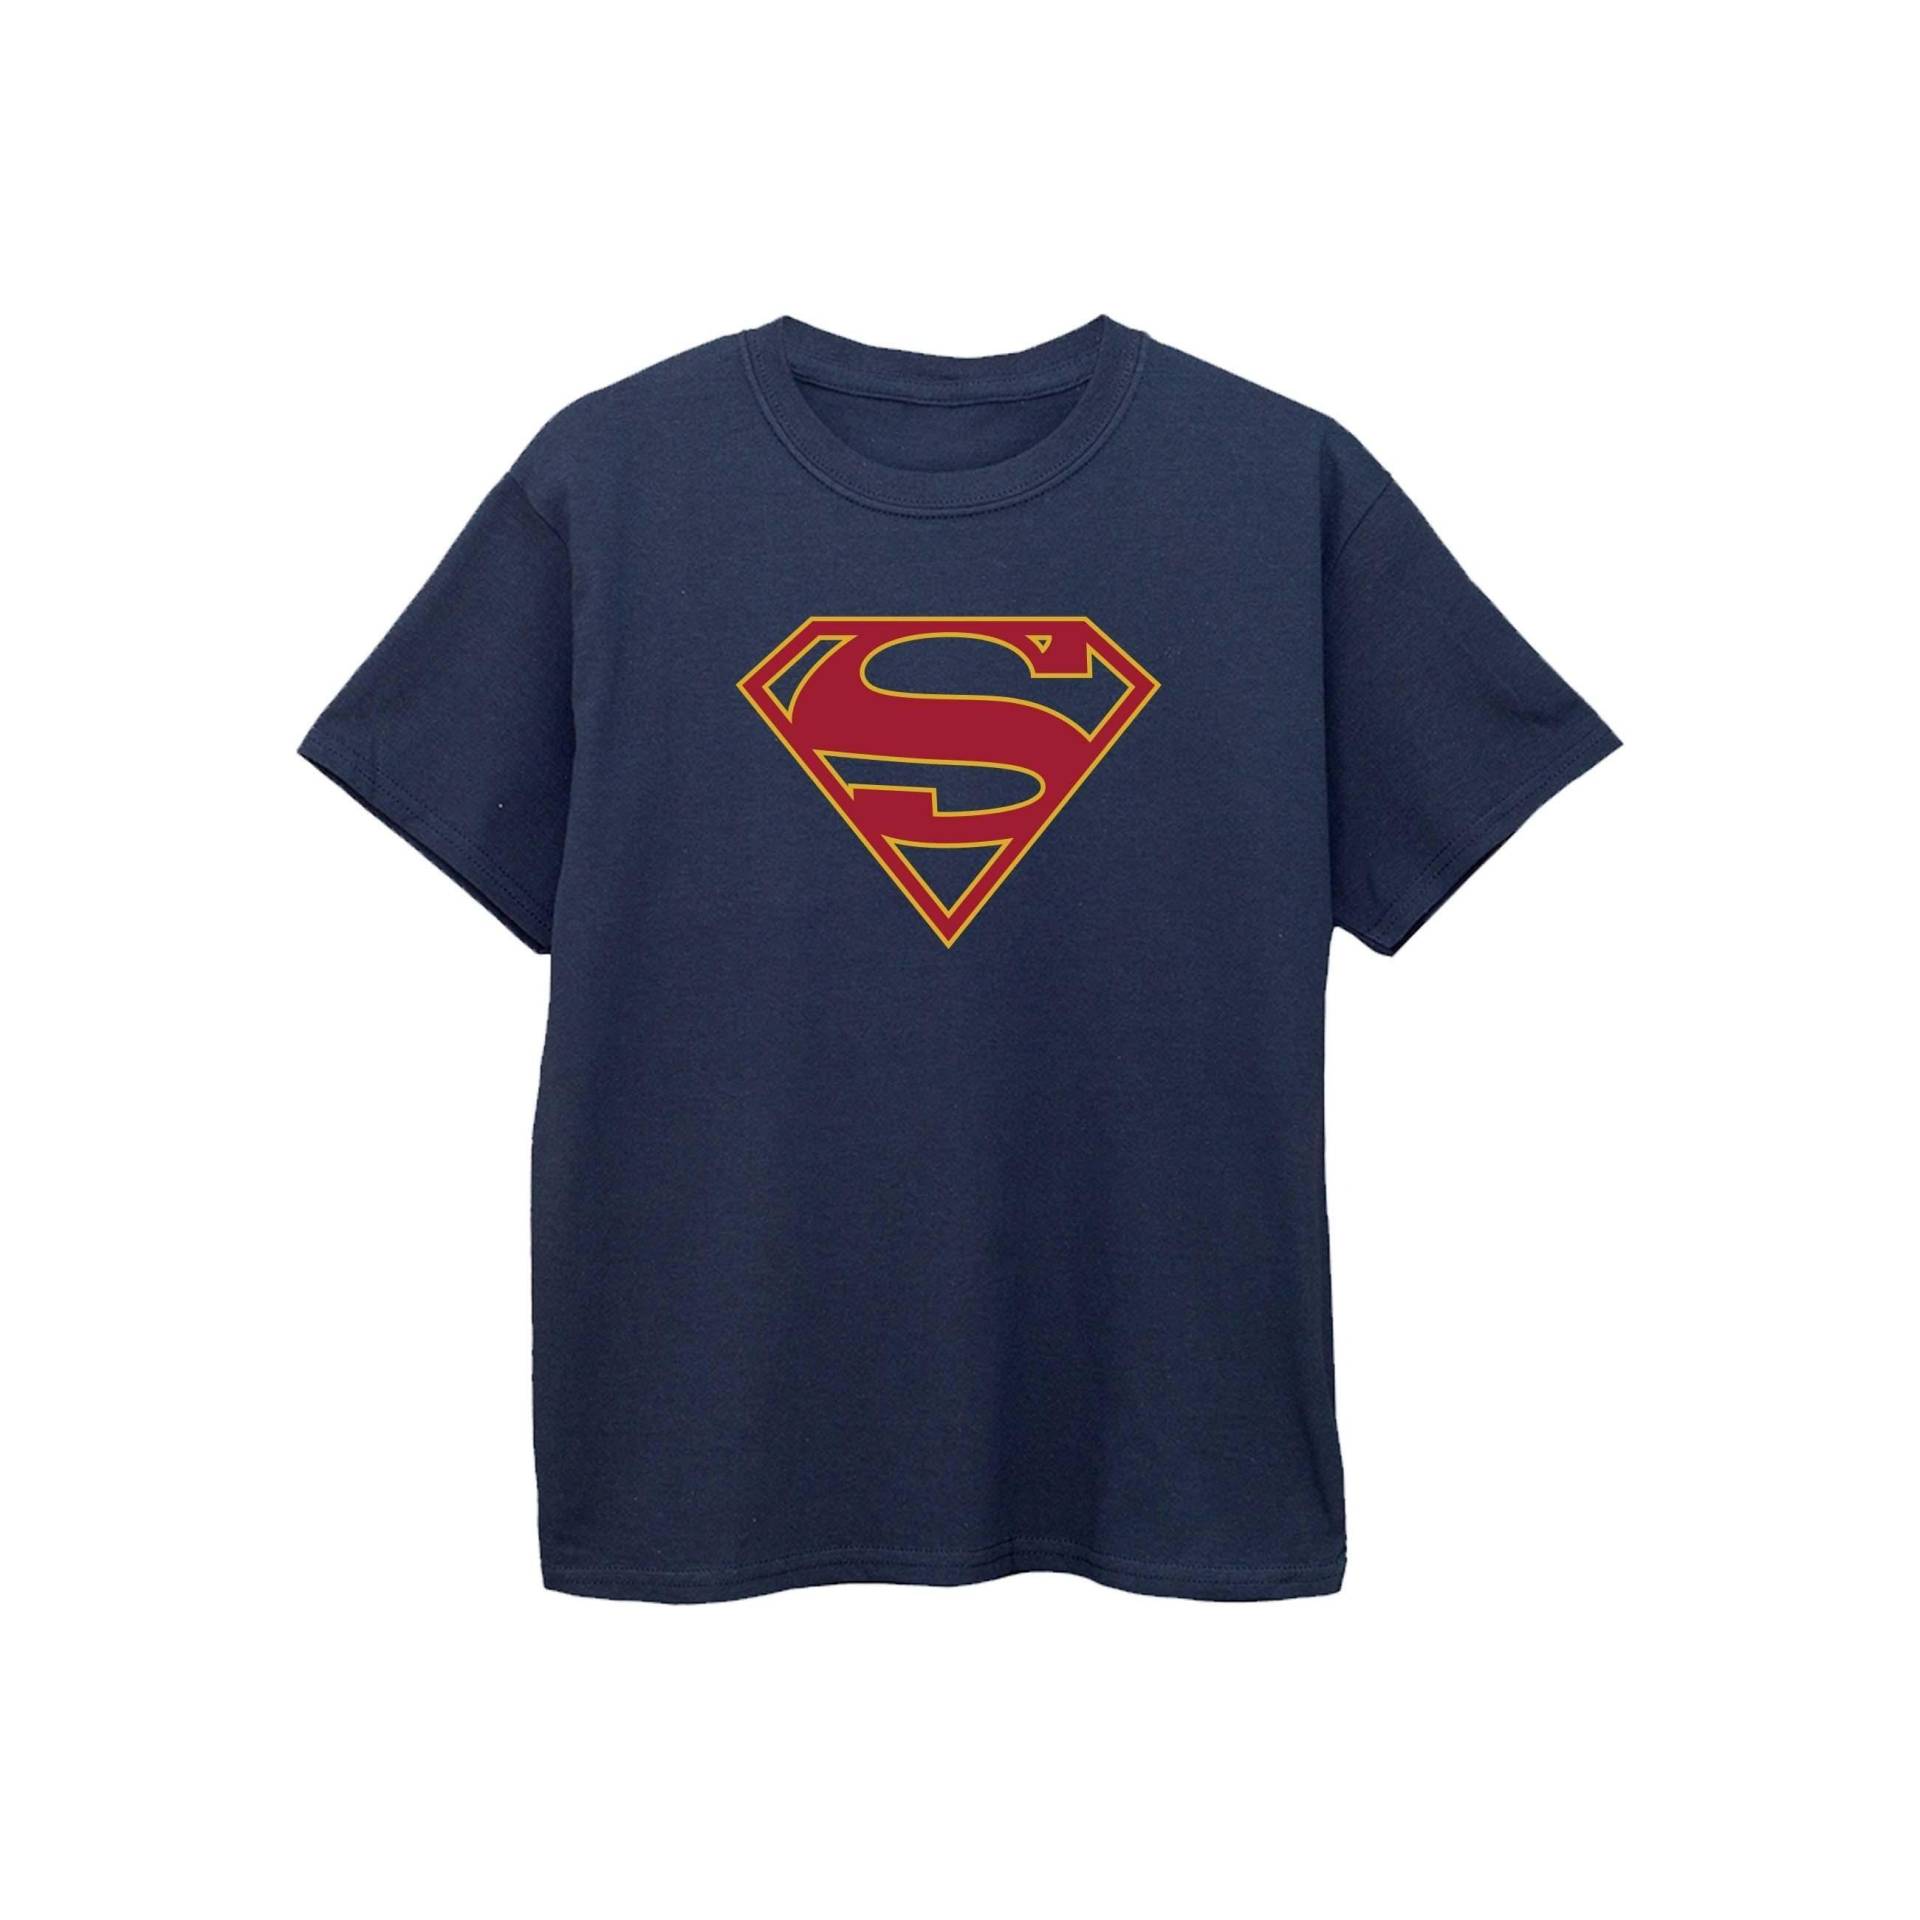 Tshirt Mädchen Marine 140/146 von Supergirl